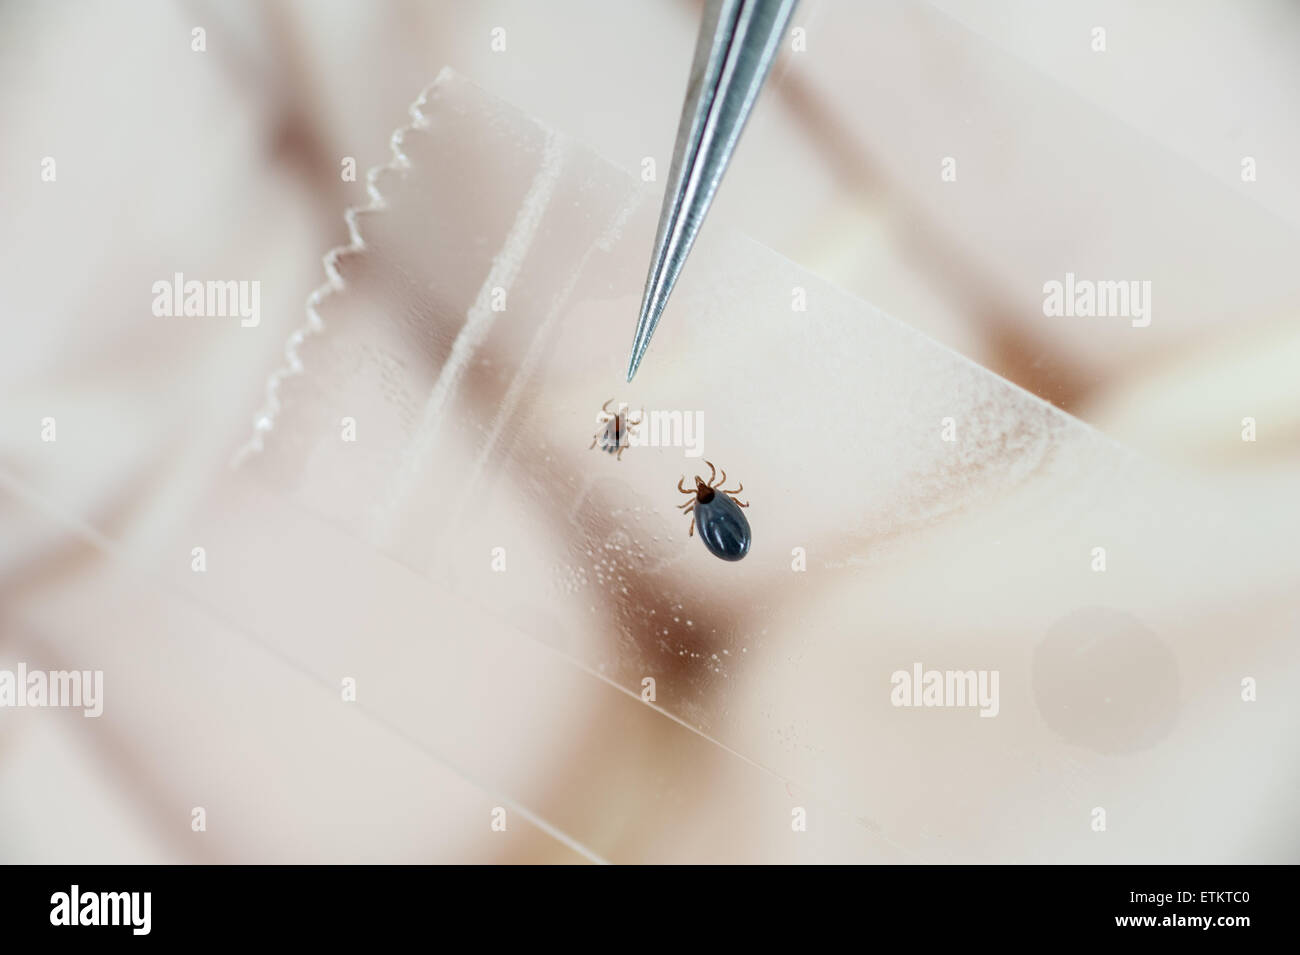 Pinzette auf eine Zecke während der Recherche der Lyme-Borreliose in College Park, Maryland, USA Stockfoto